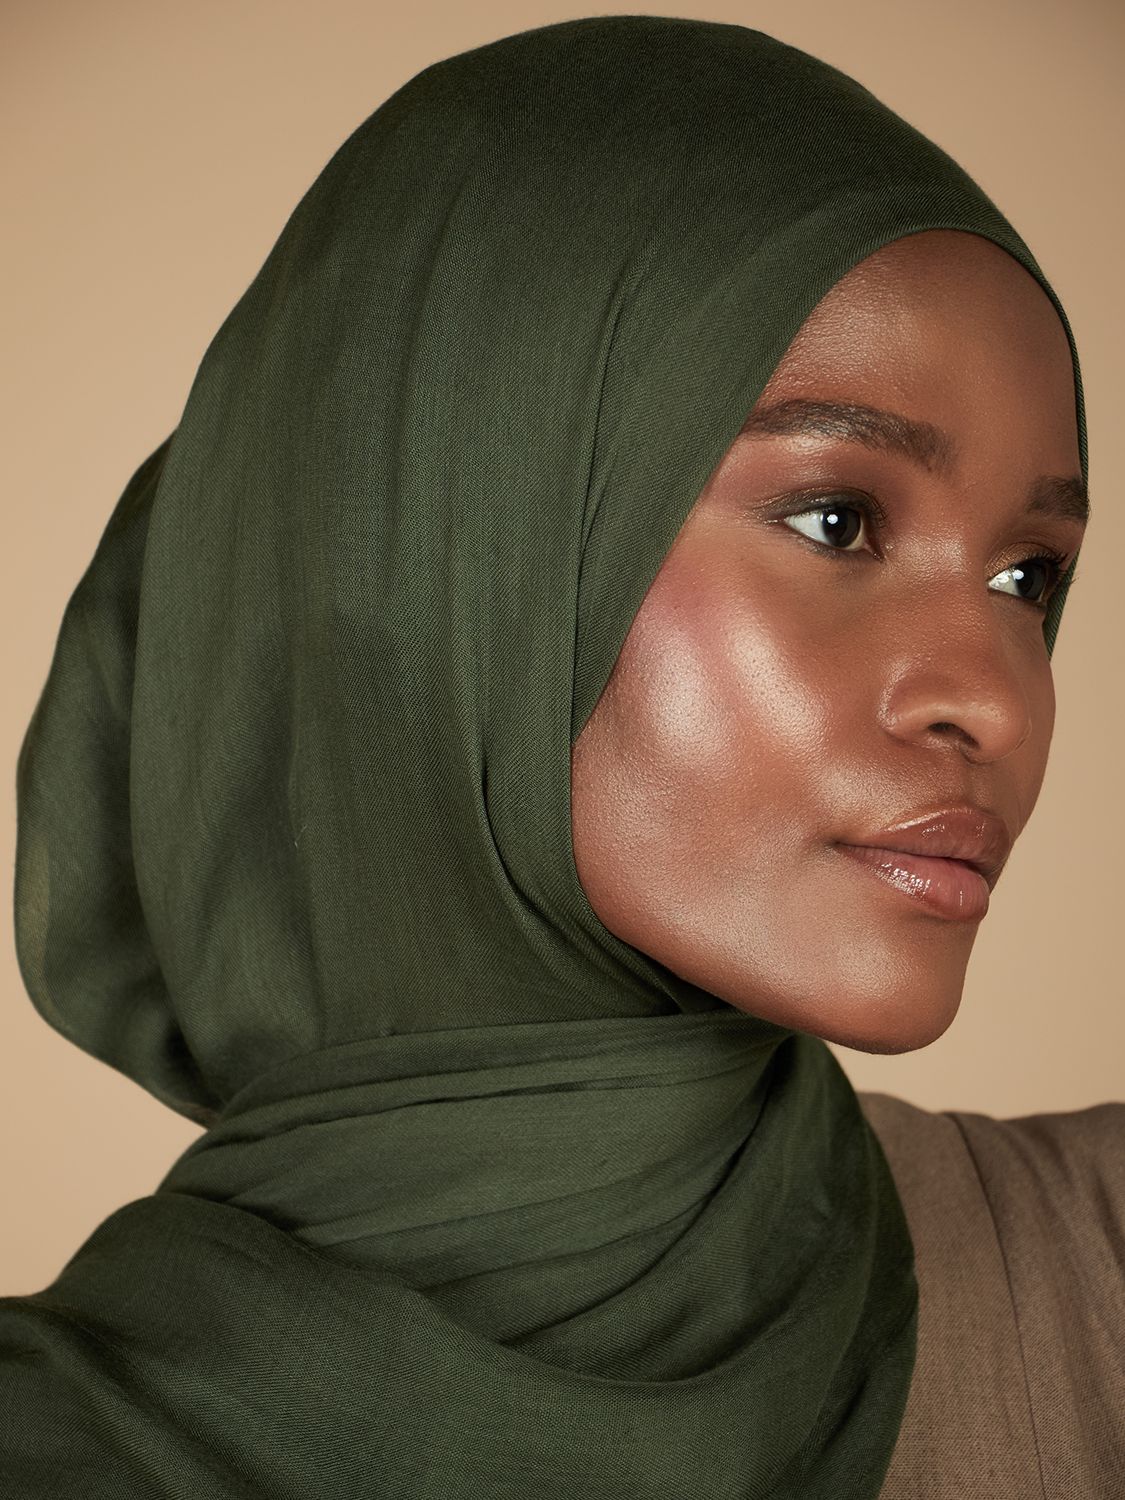 Aab Plain Modal Hijab, Dark Green, One Size